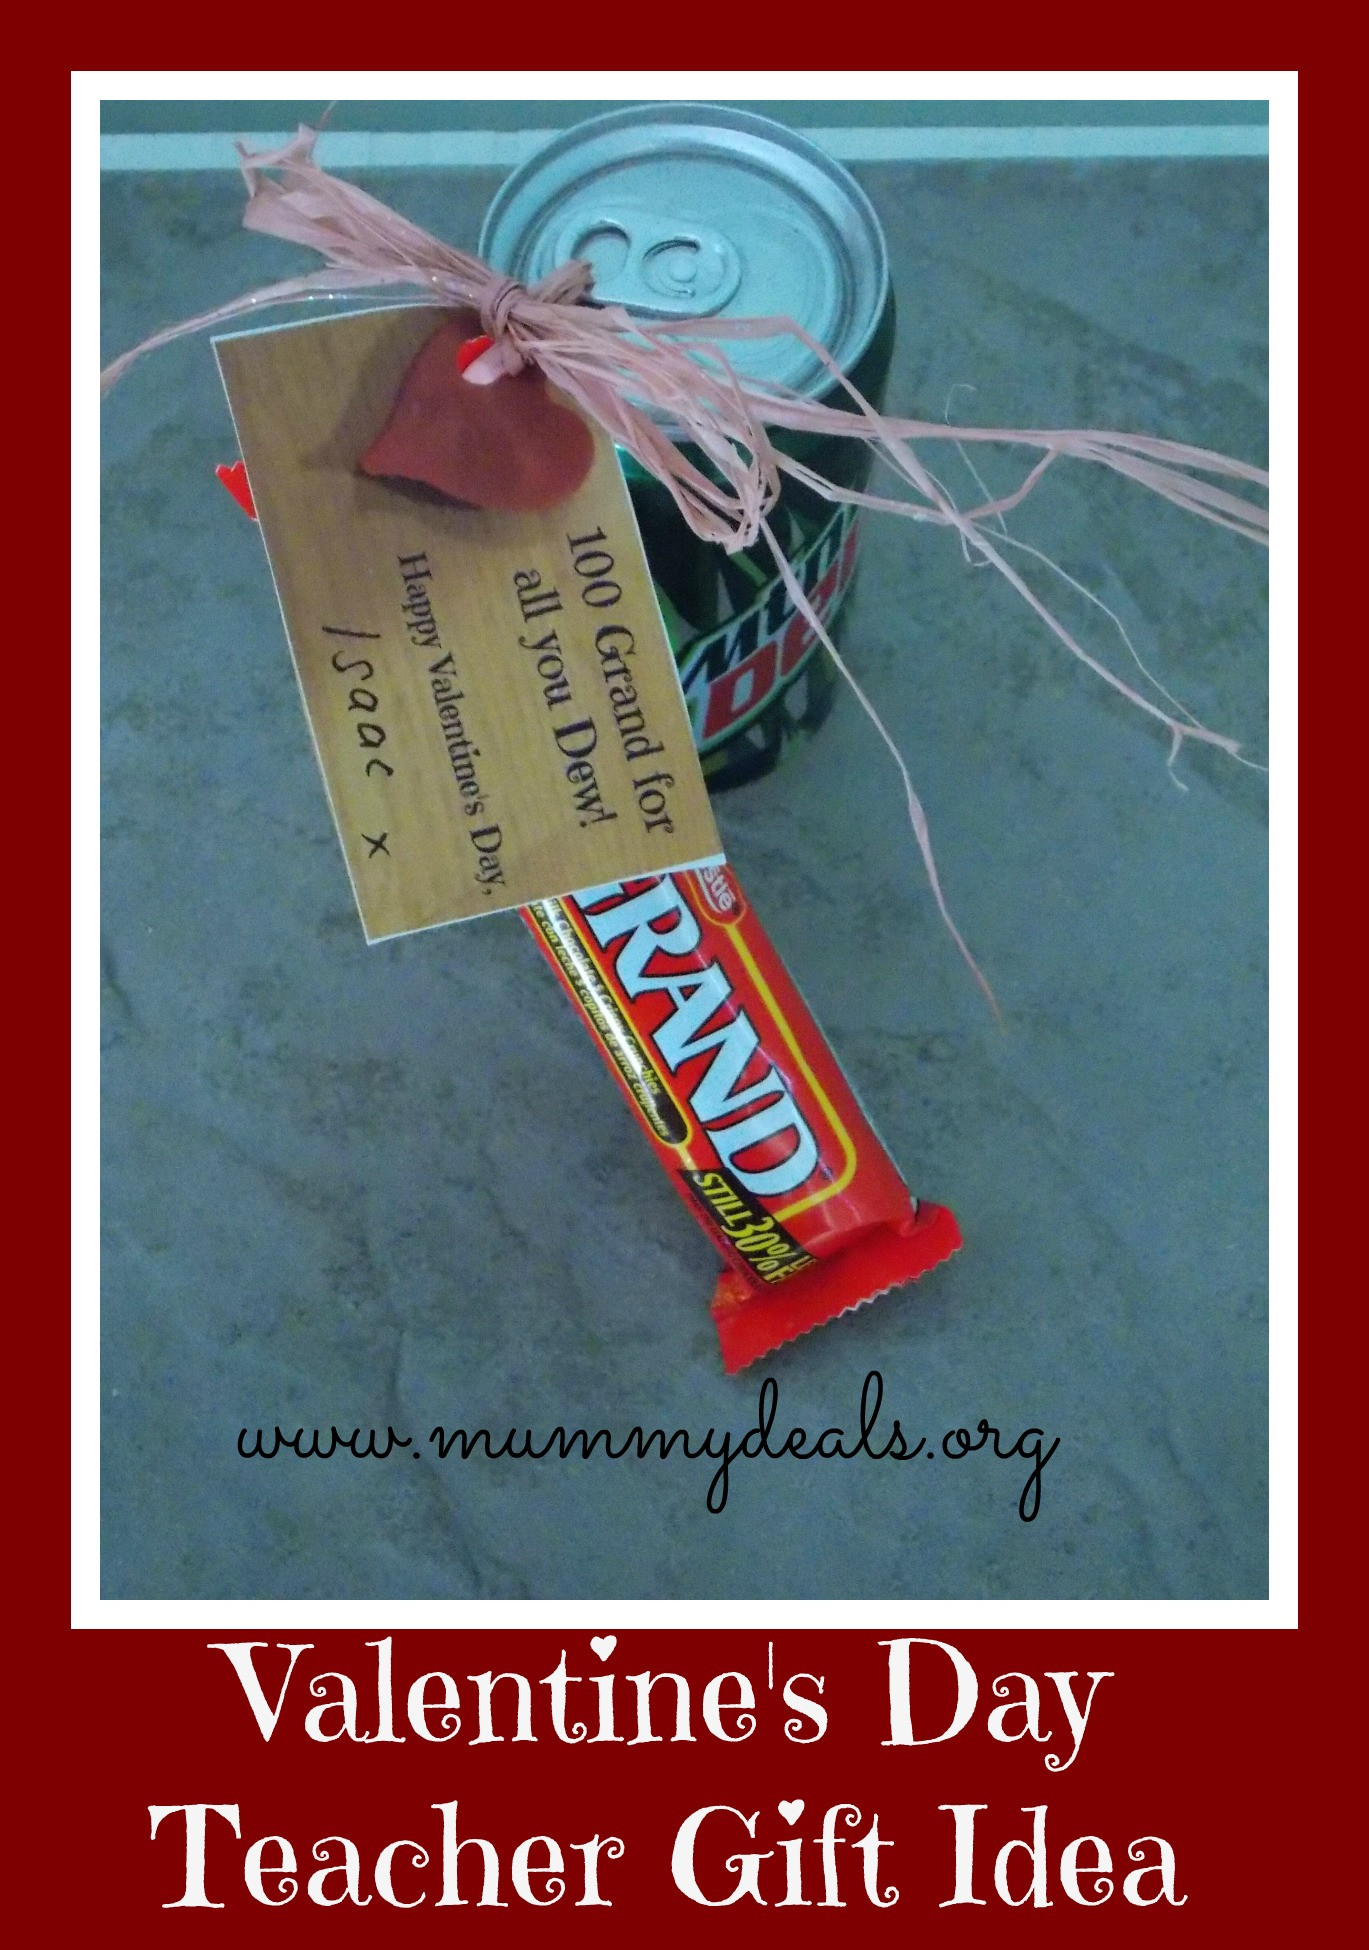 Valentines Day Gift Ideas Teachers
 6 Valentine s Day Teacher Gift Ideas Mummy Deals